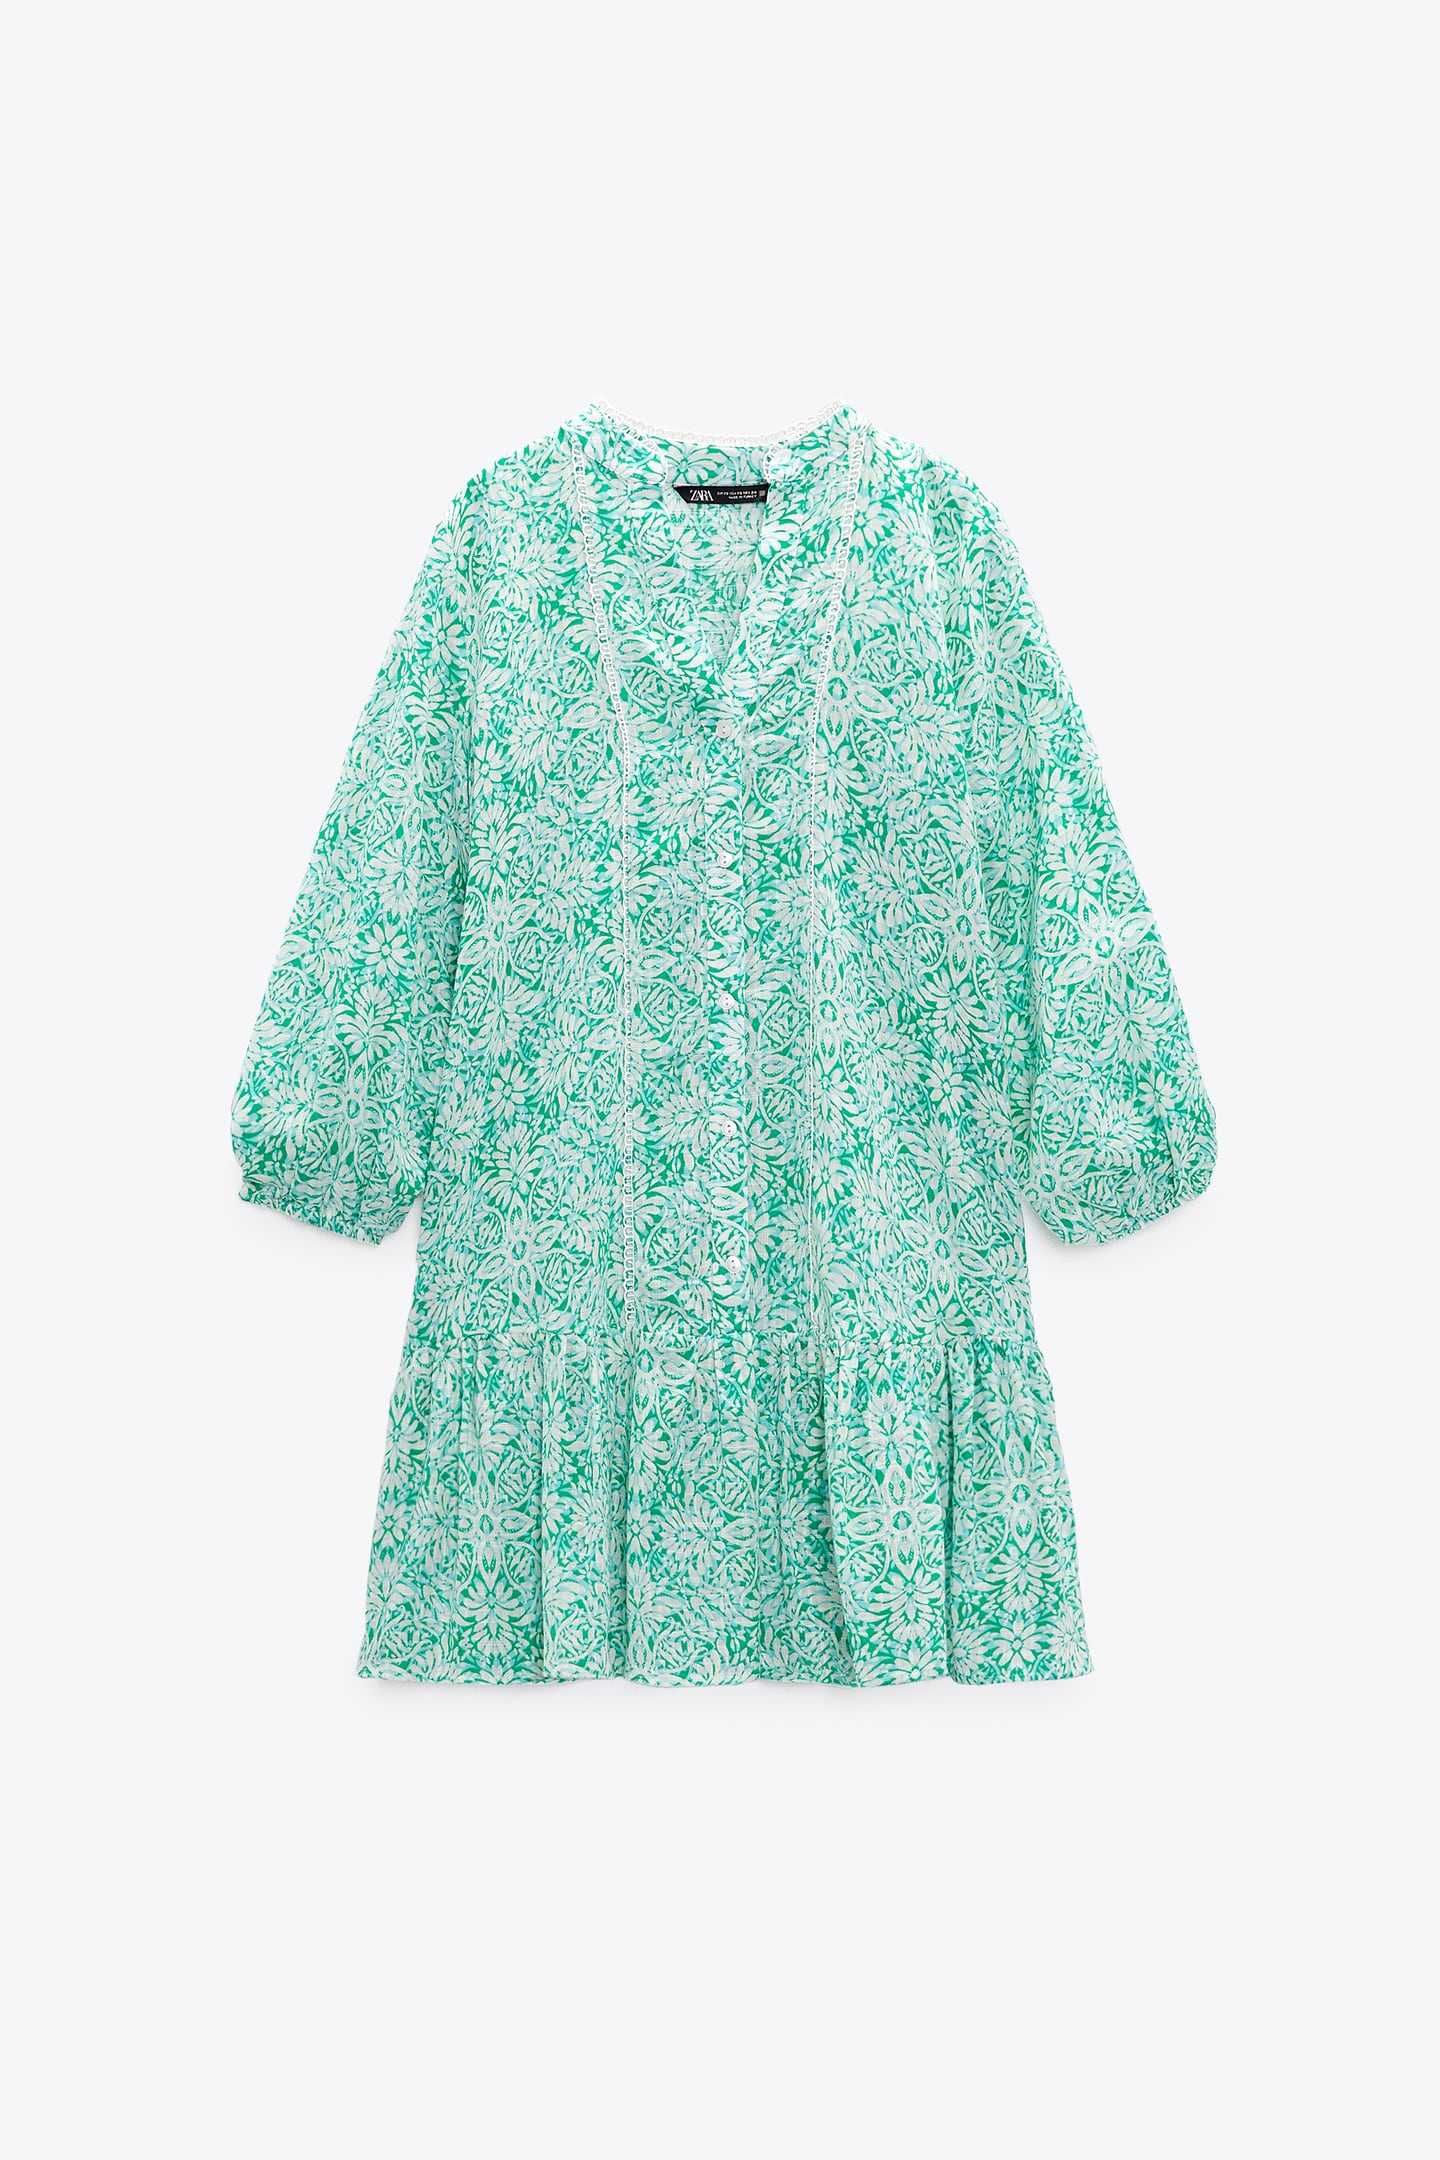 NOWA 38 M ZARA sukienka 100% bawełna miętowa zielona print boho print